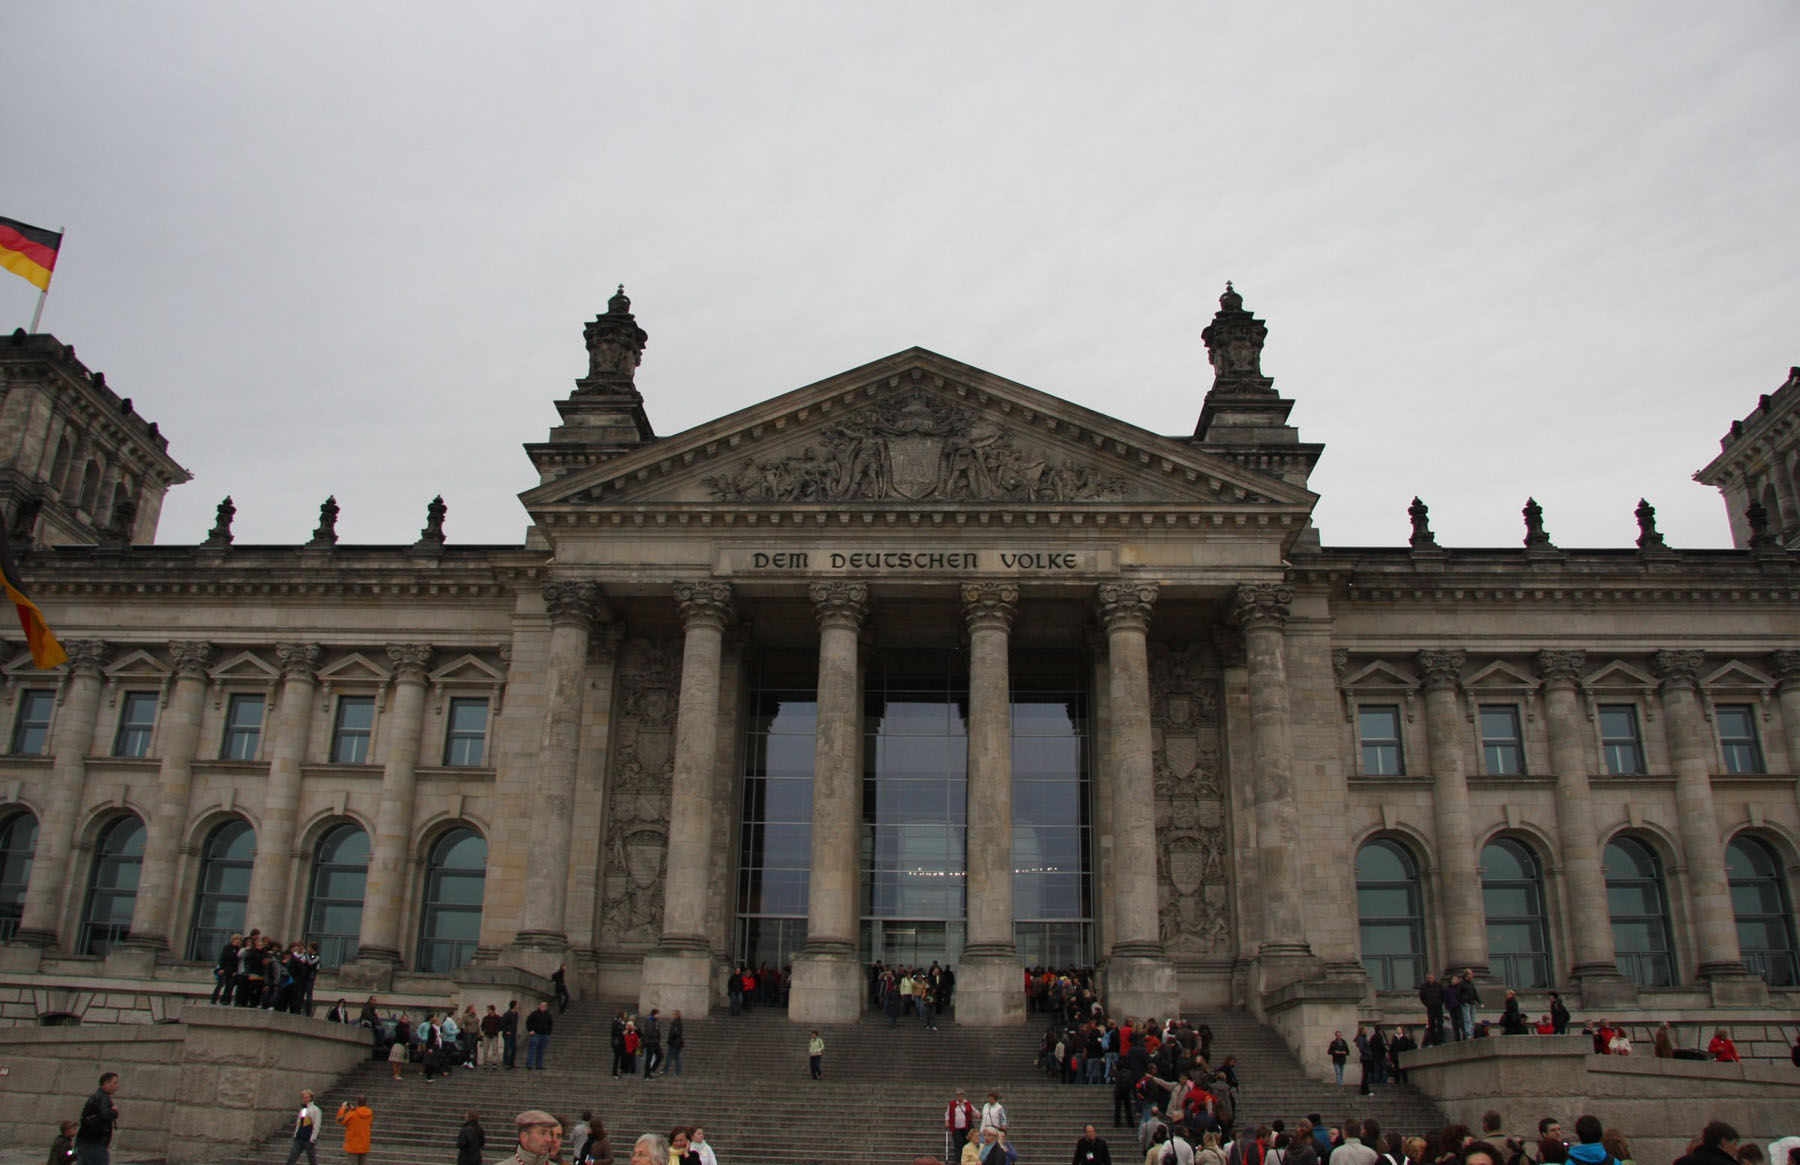 Reichstag
